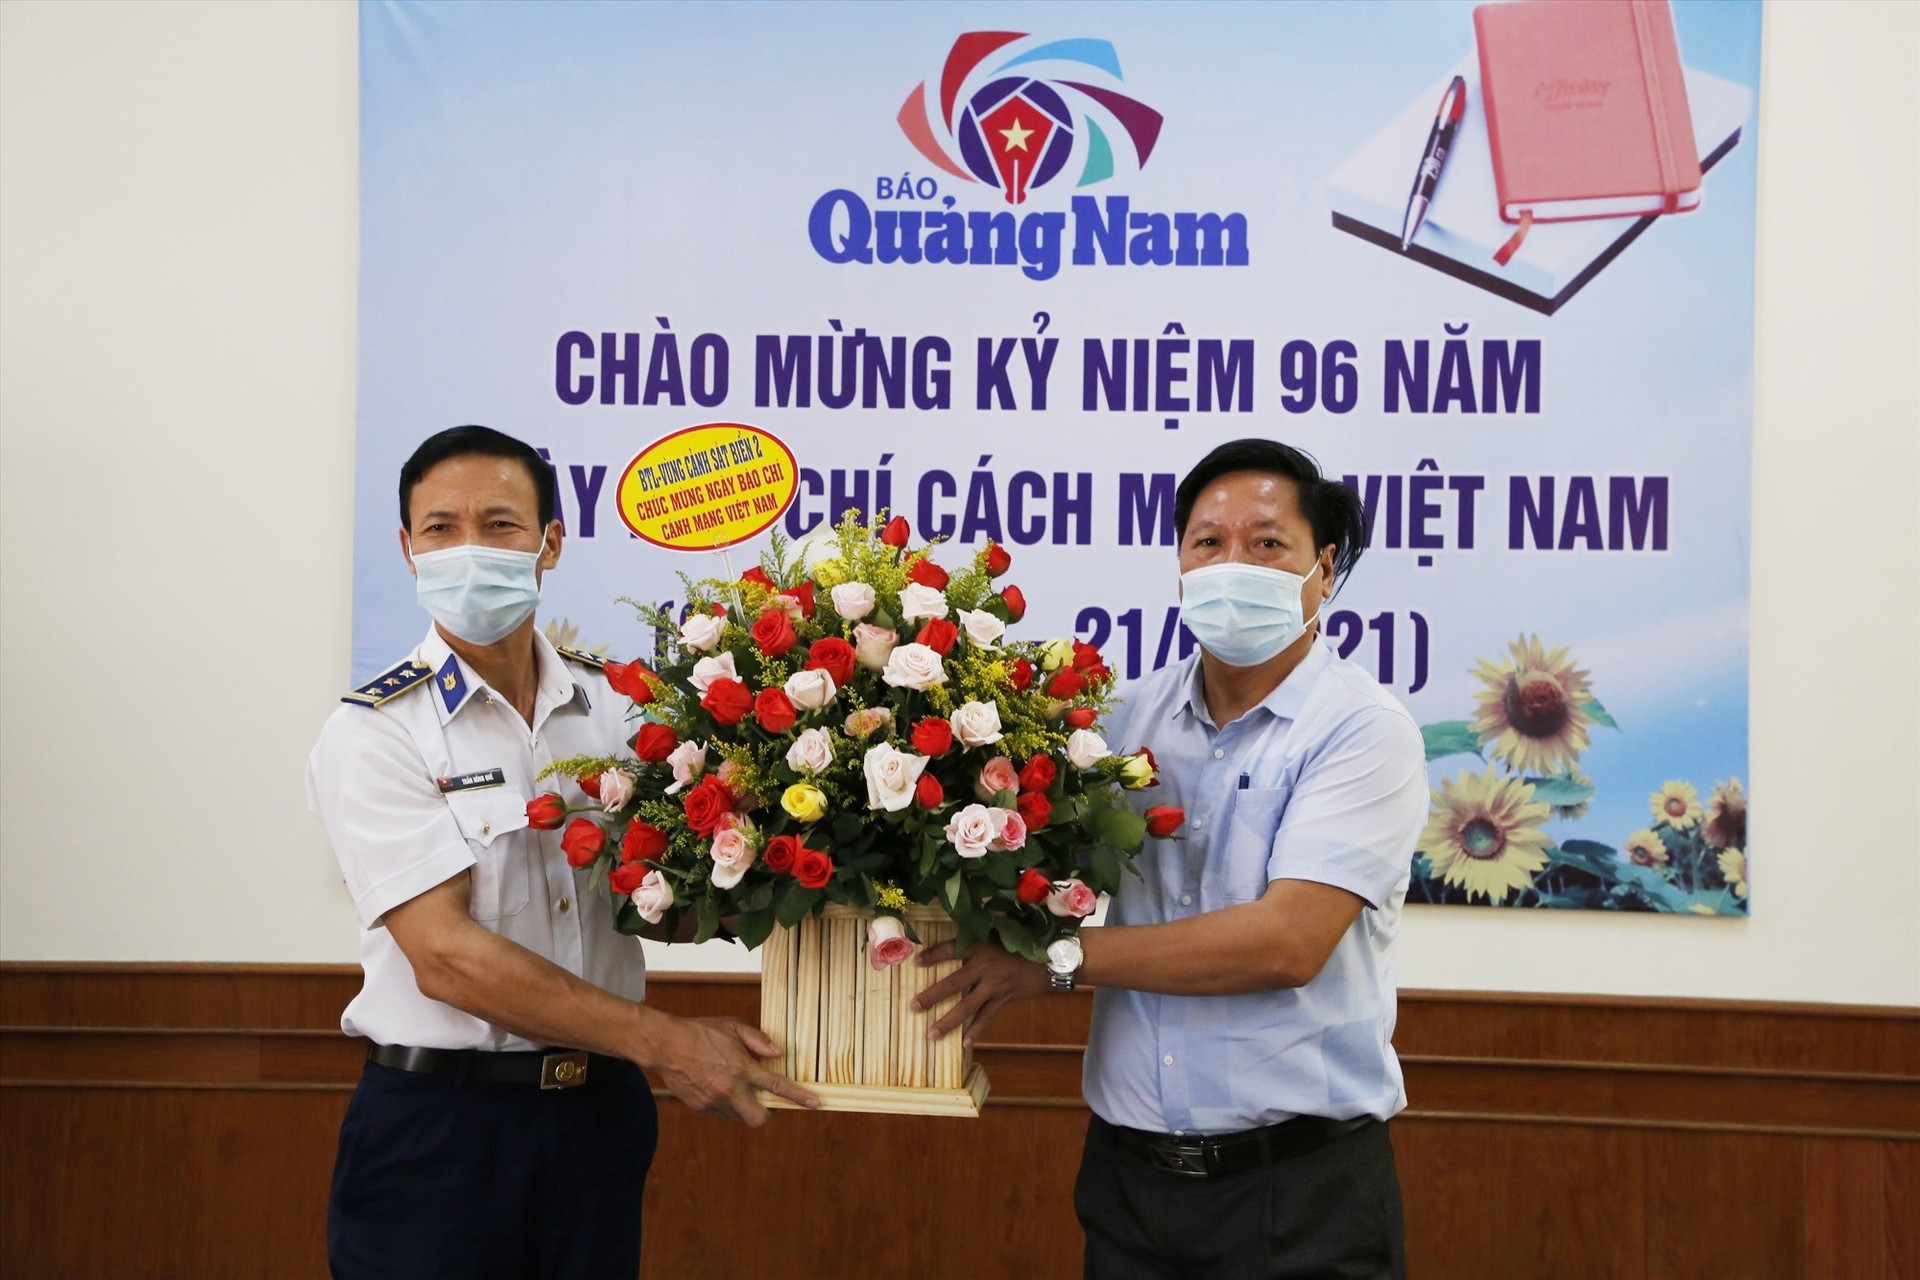 Đại diện lãnh đạo Bộ tư lệnh Vùng Cảnh sát biển 2 thăm, tặng hoa Báo Quảng Nam nhân kỷ niệm 96 năm ngày Báo chí cách mạng Việt Nam. Ảnh: T.C